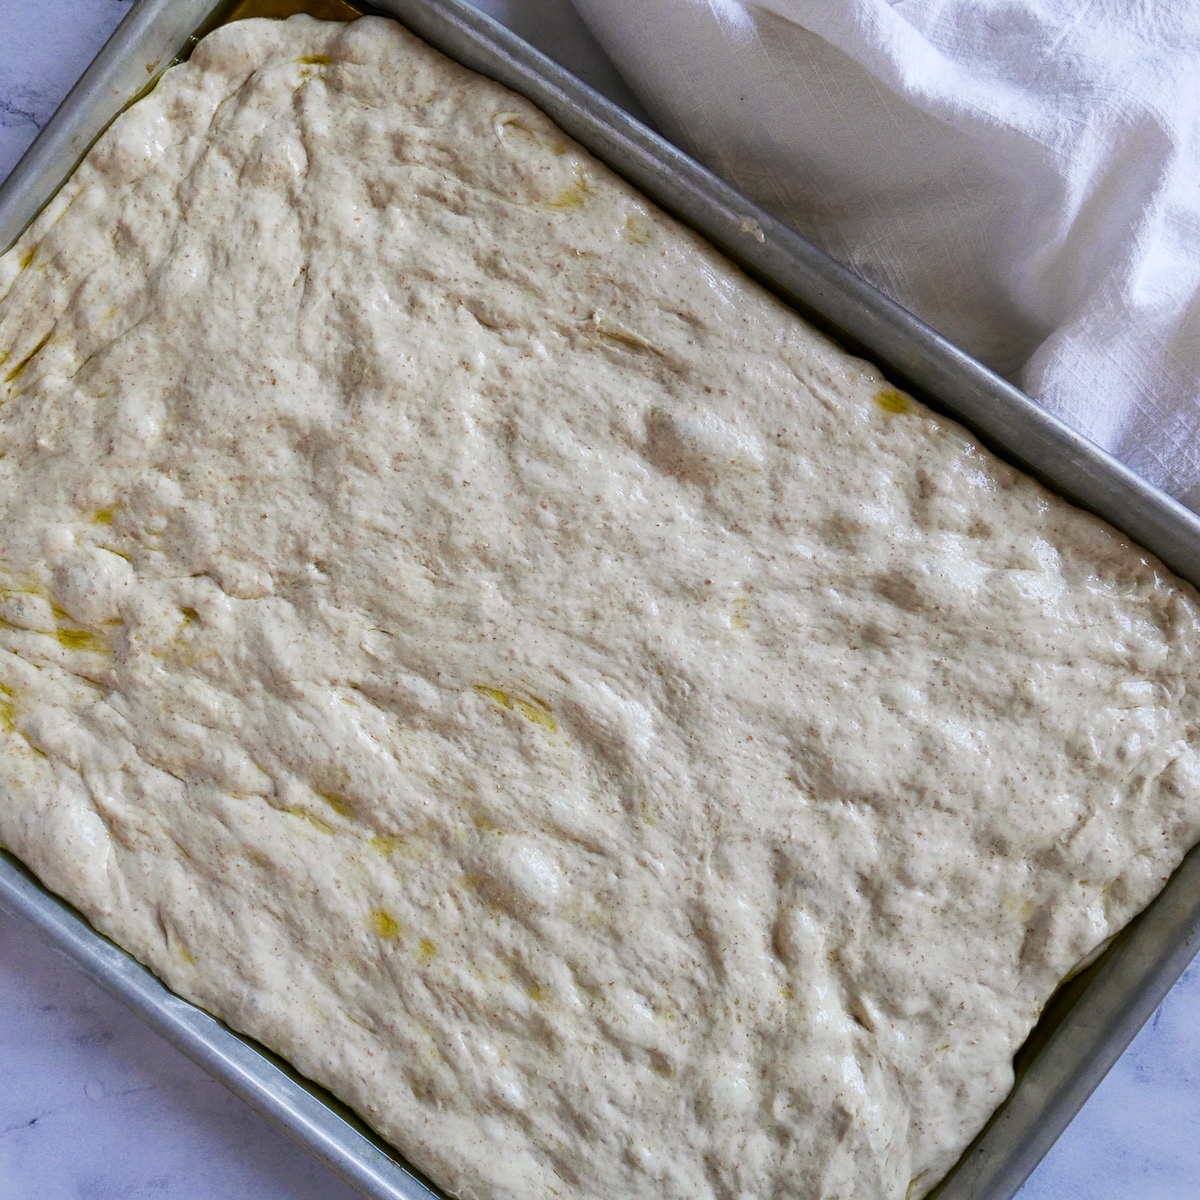 focaccia dough spread onto an oiled baking sheet.